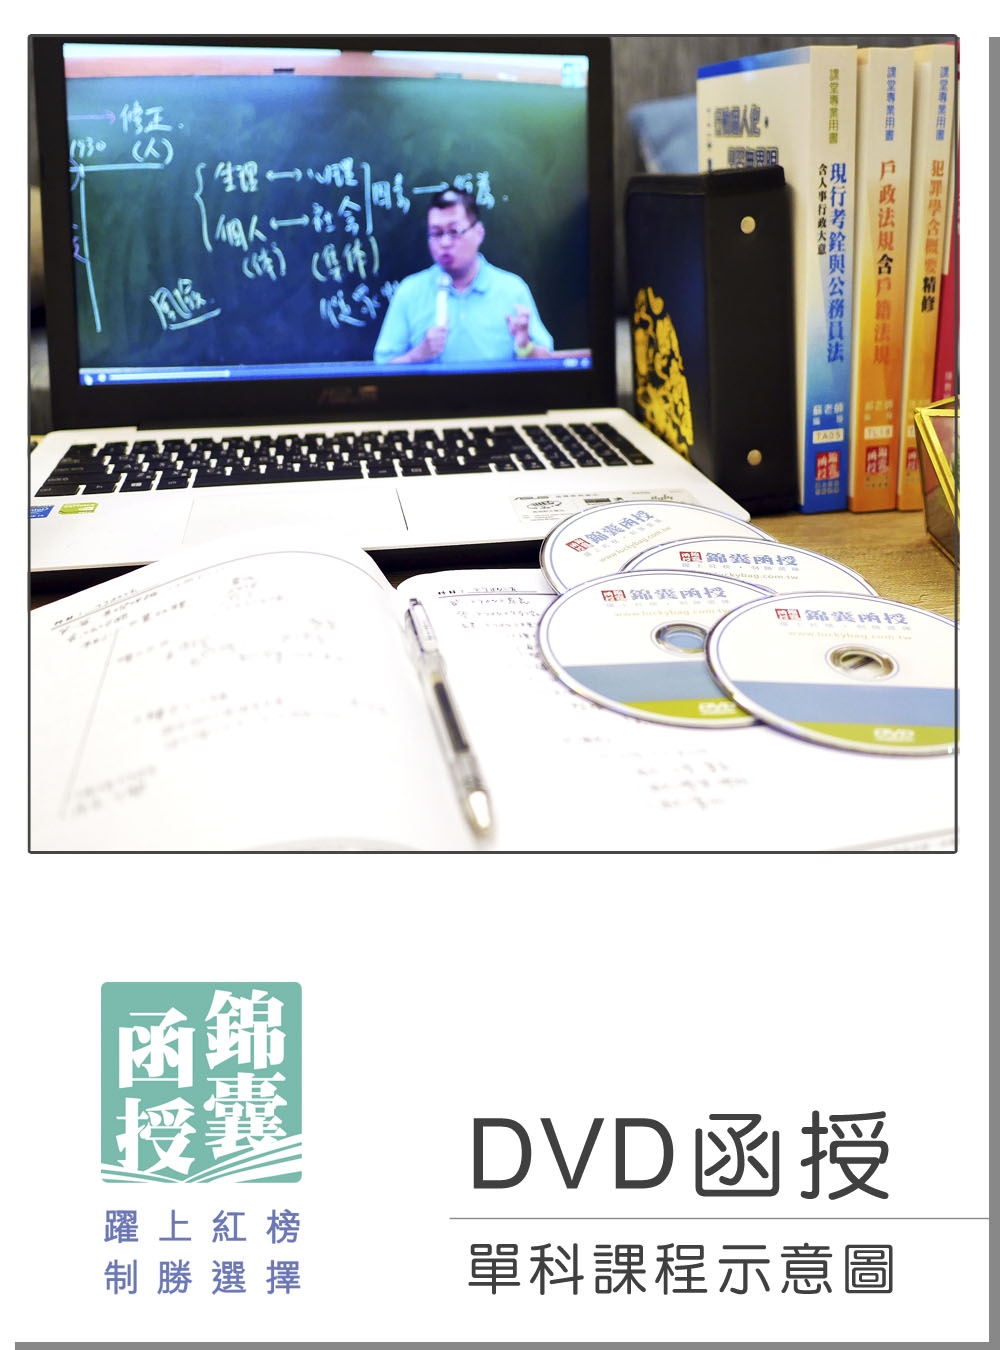 DVD函授 郵政法暨交通安全常識(含郵政三法)：單科課程(108版)